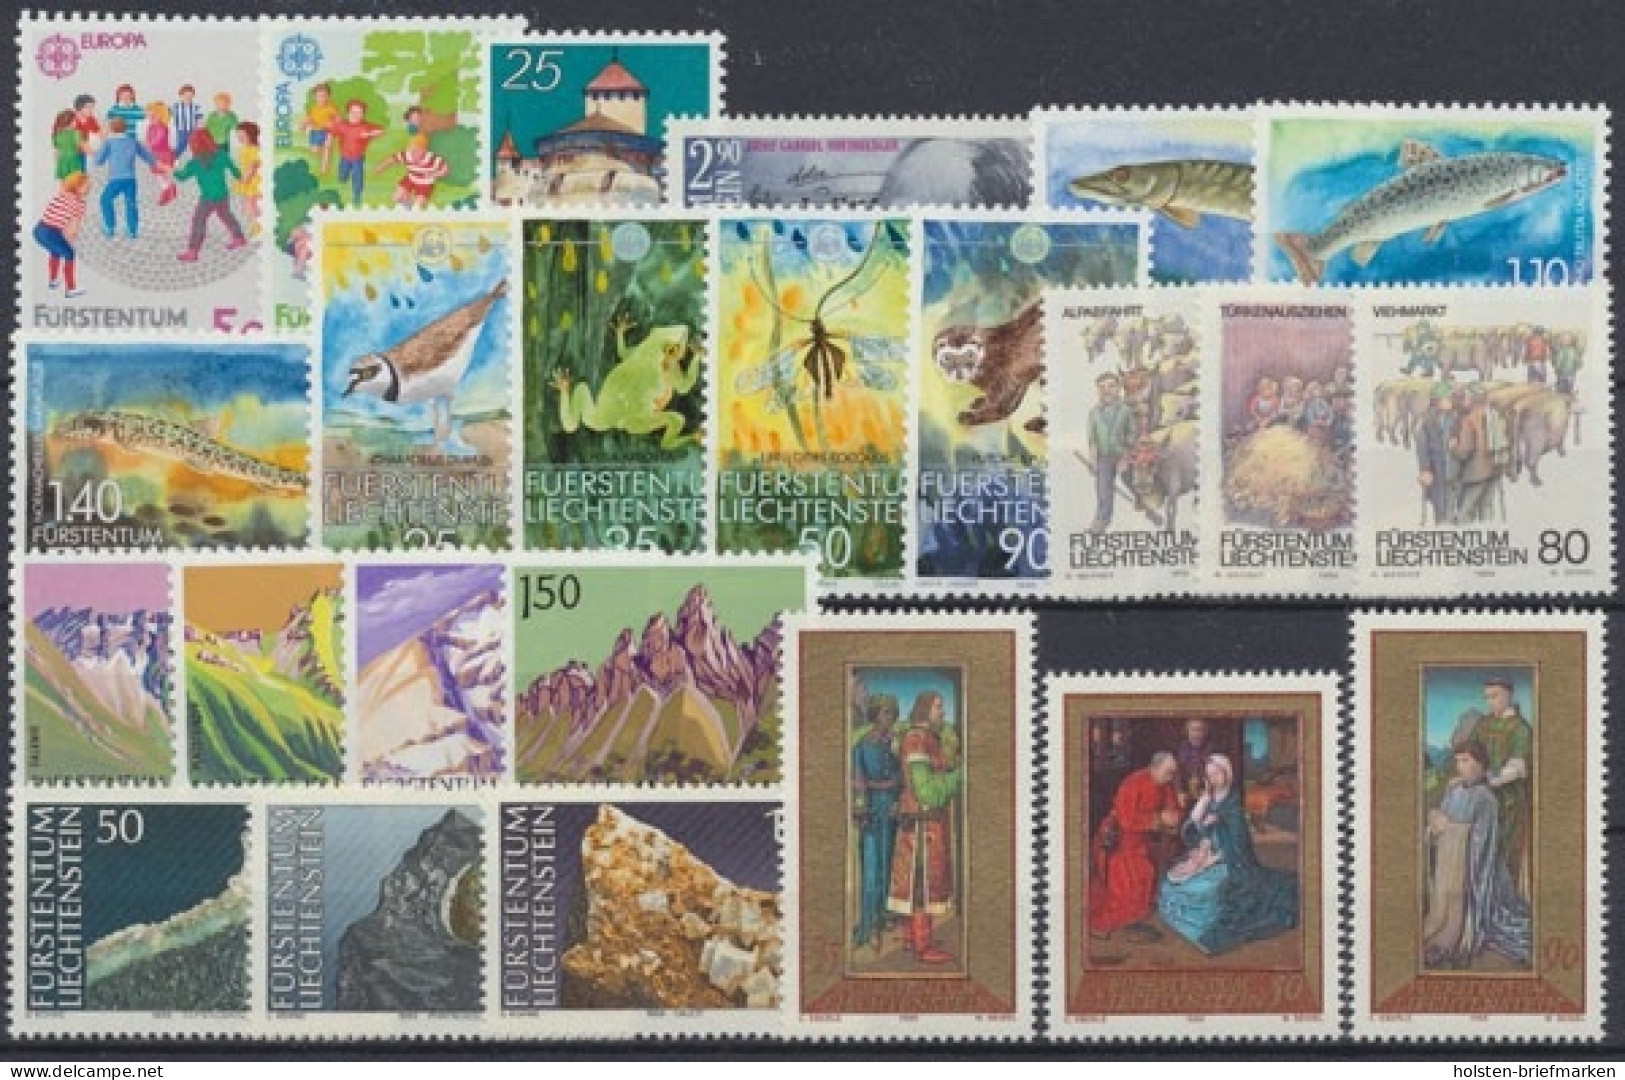 Liechtenstein, MiNr. 960-983, Jahrgang 1989, Postfrisch - Años Completos